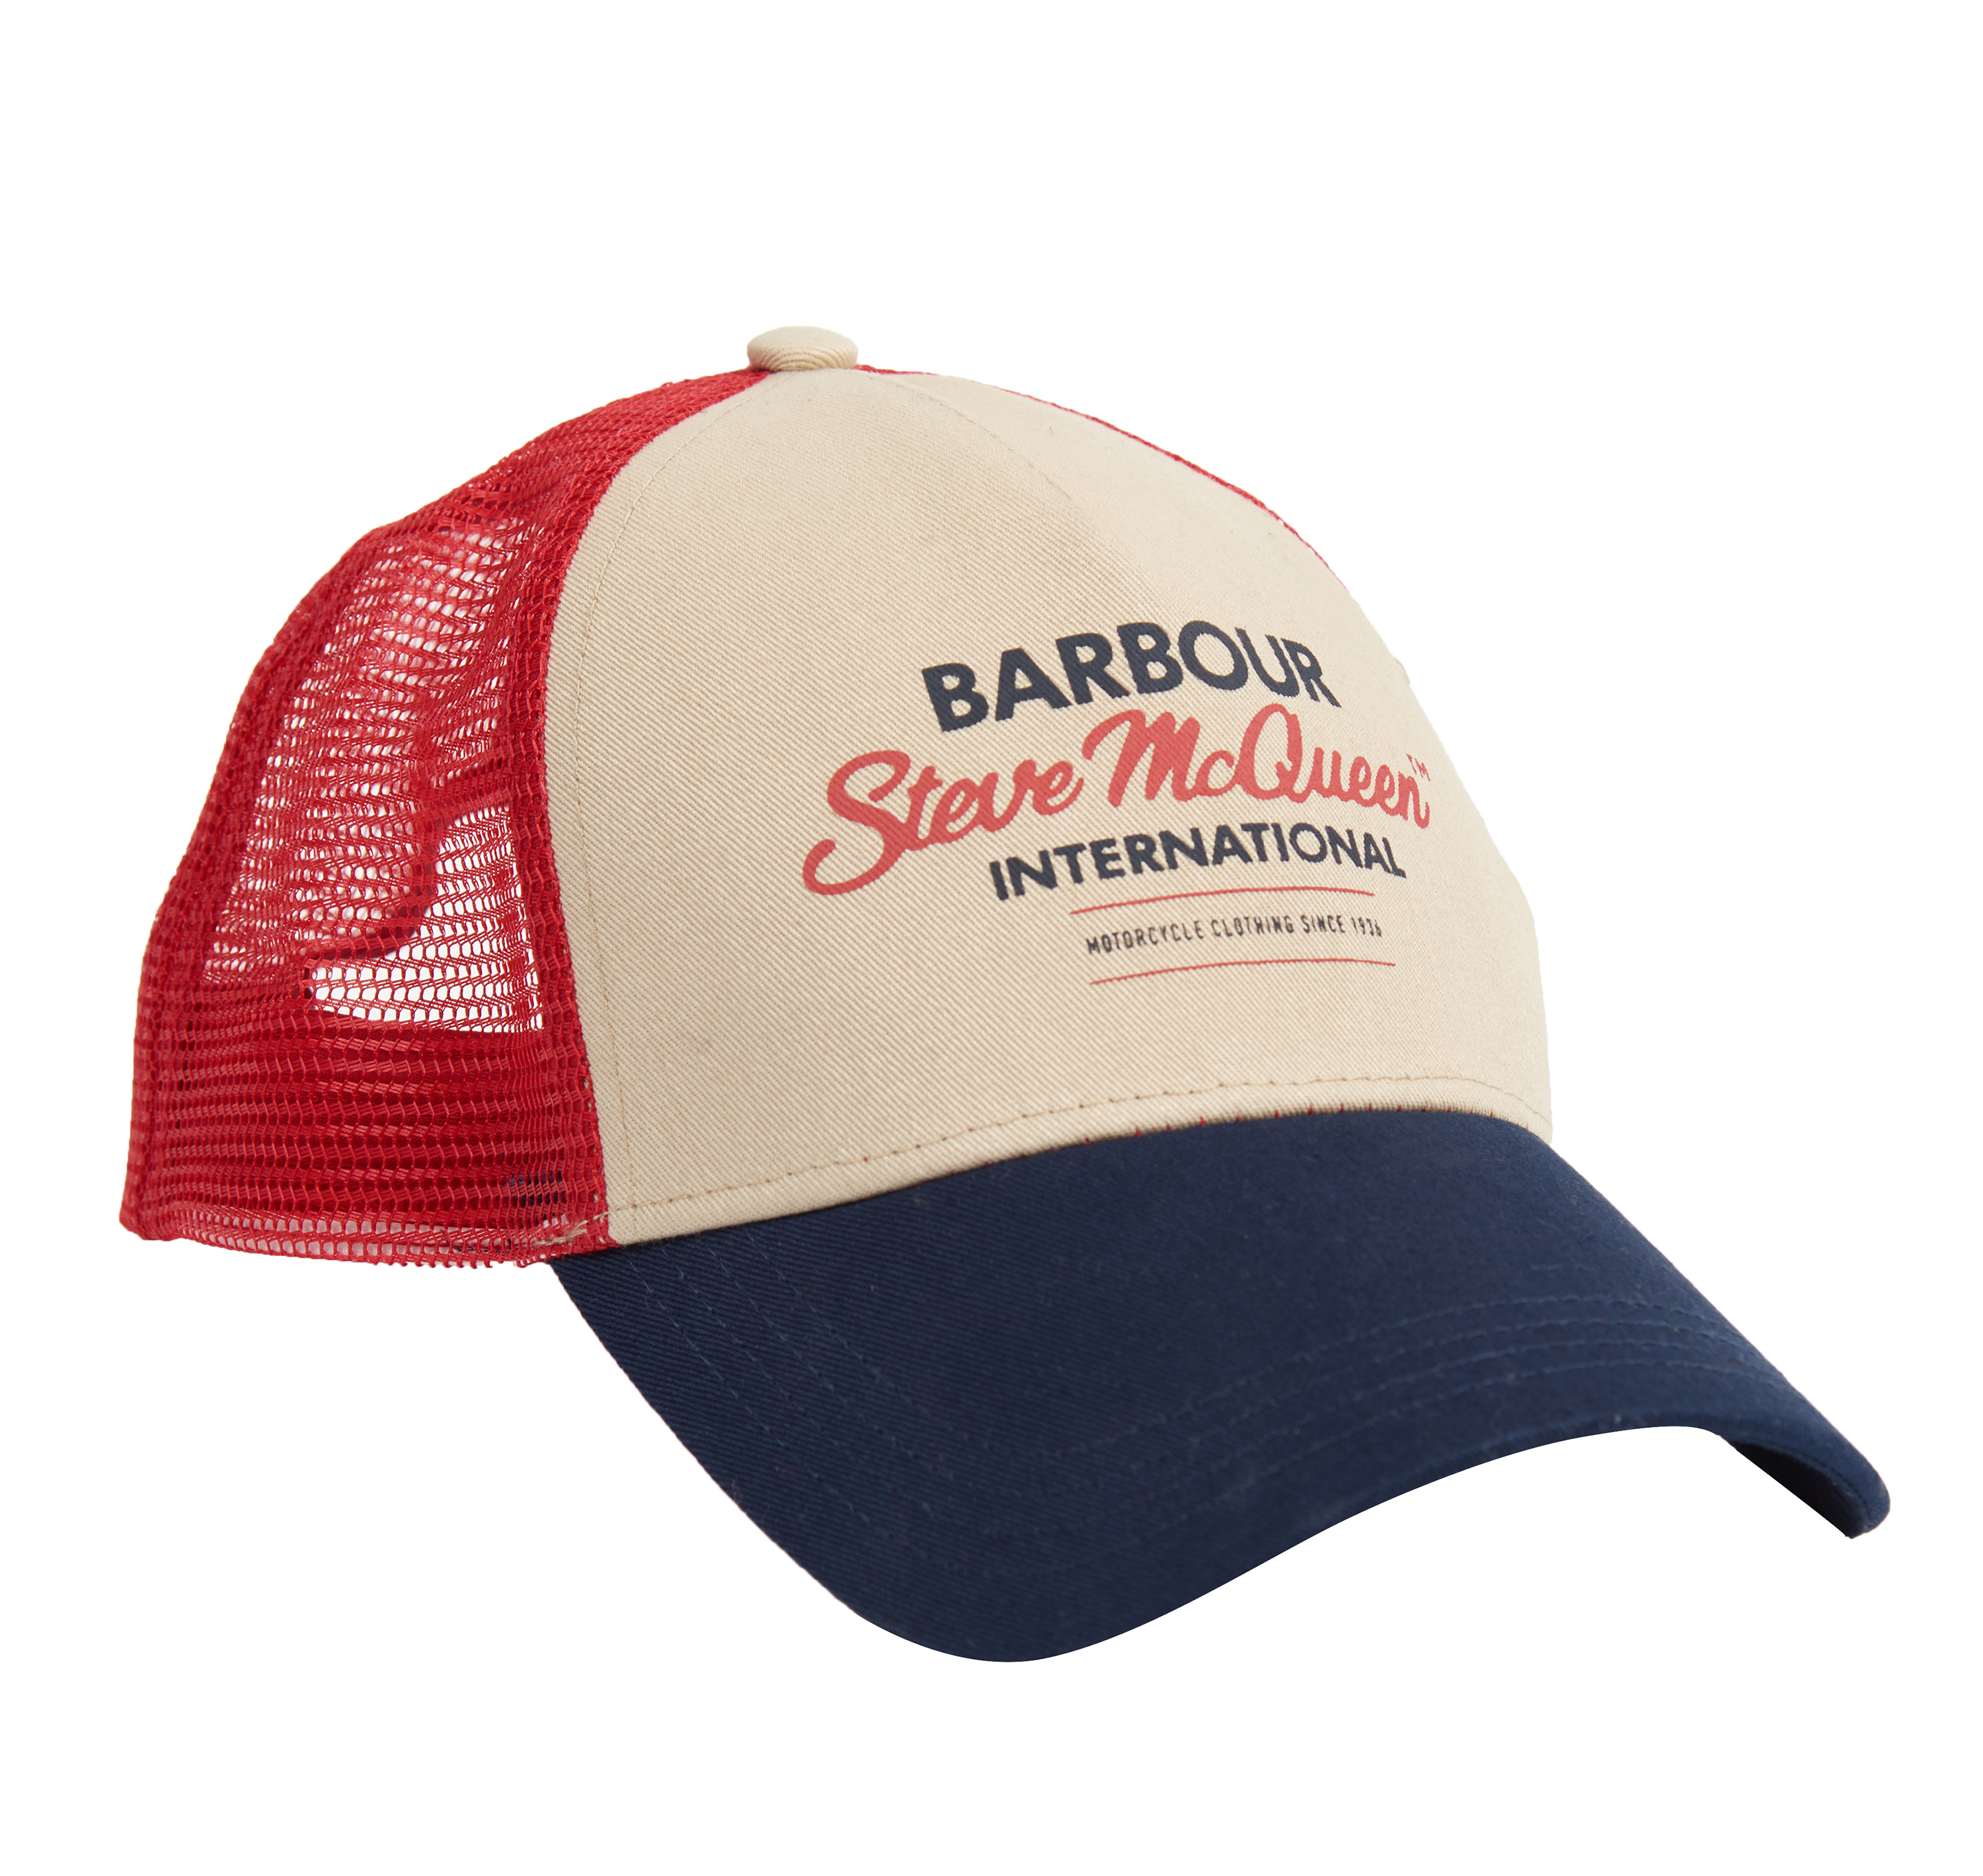 barbour trucker cap